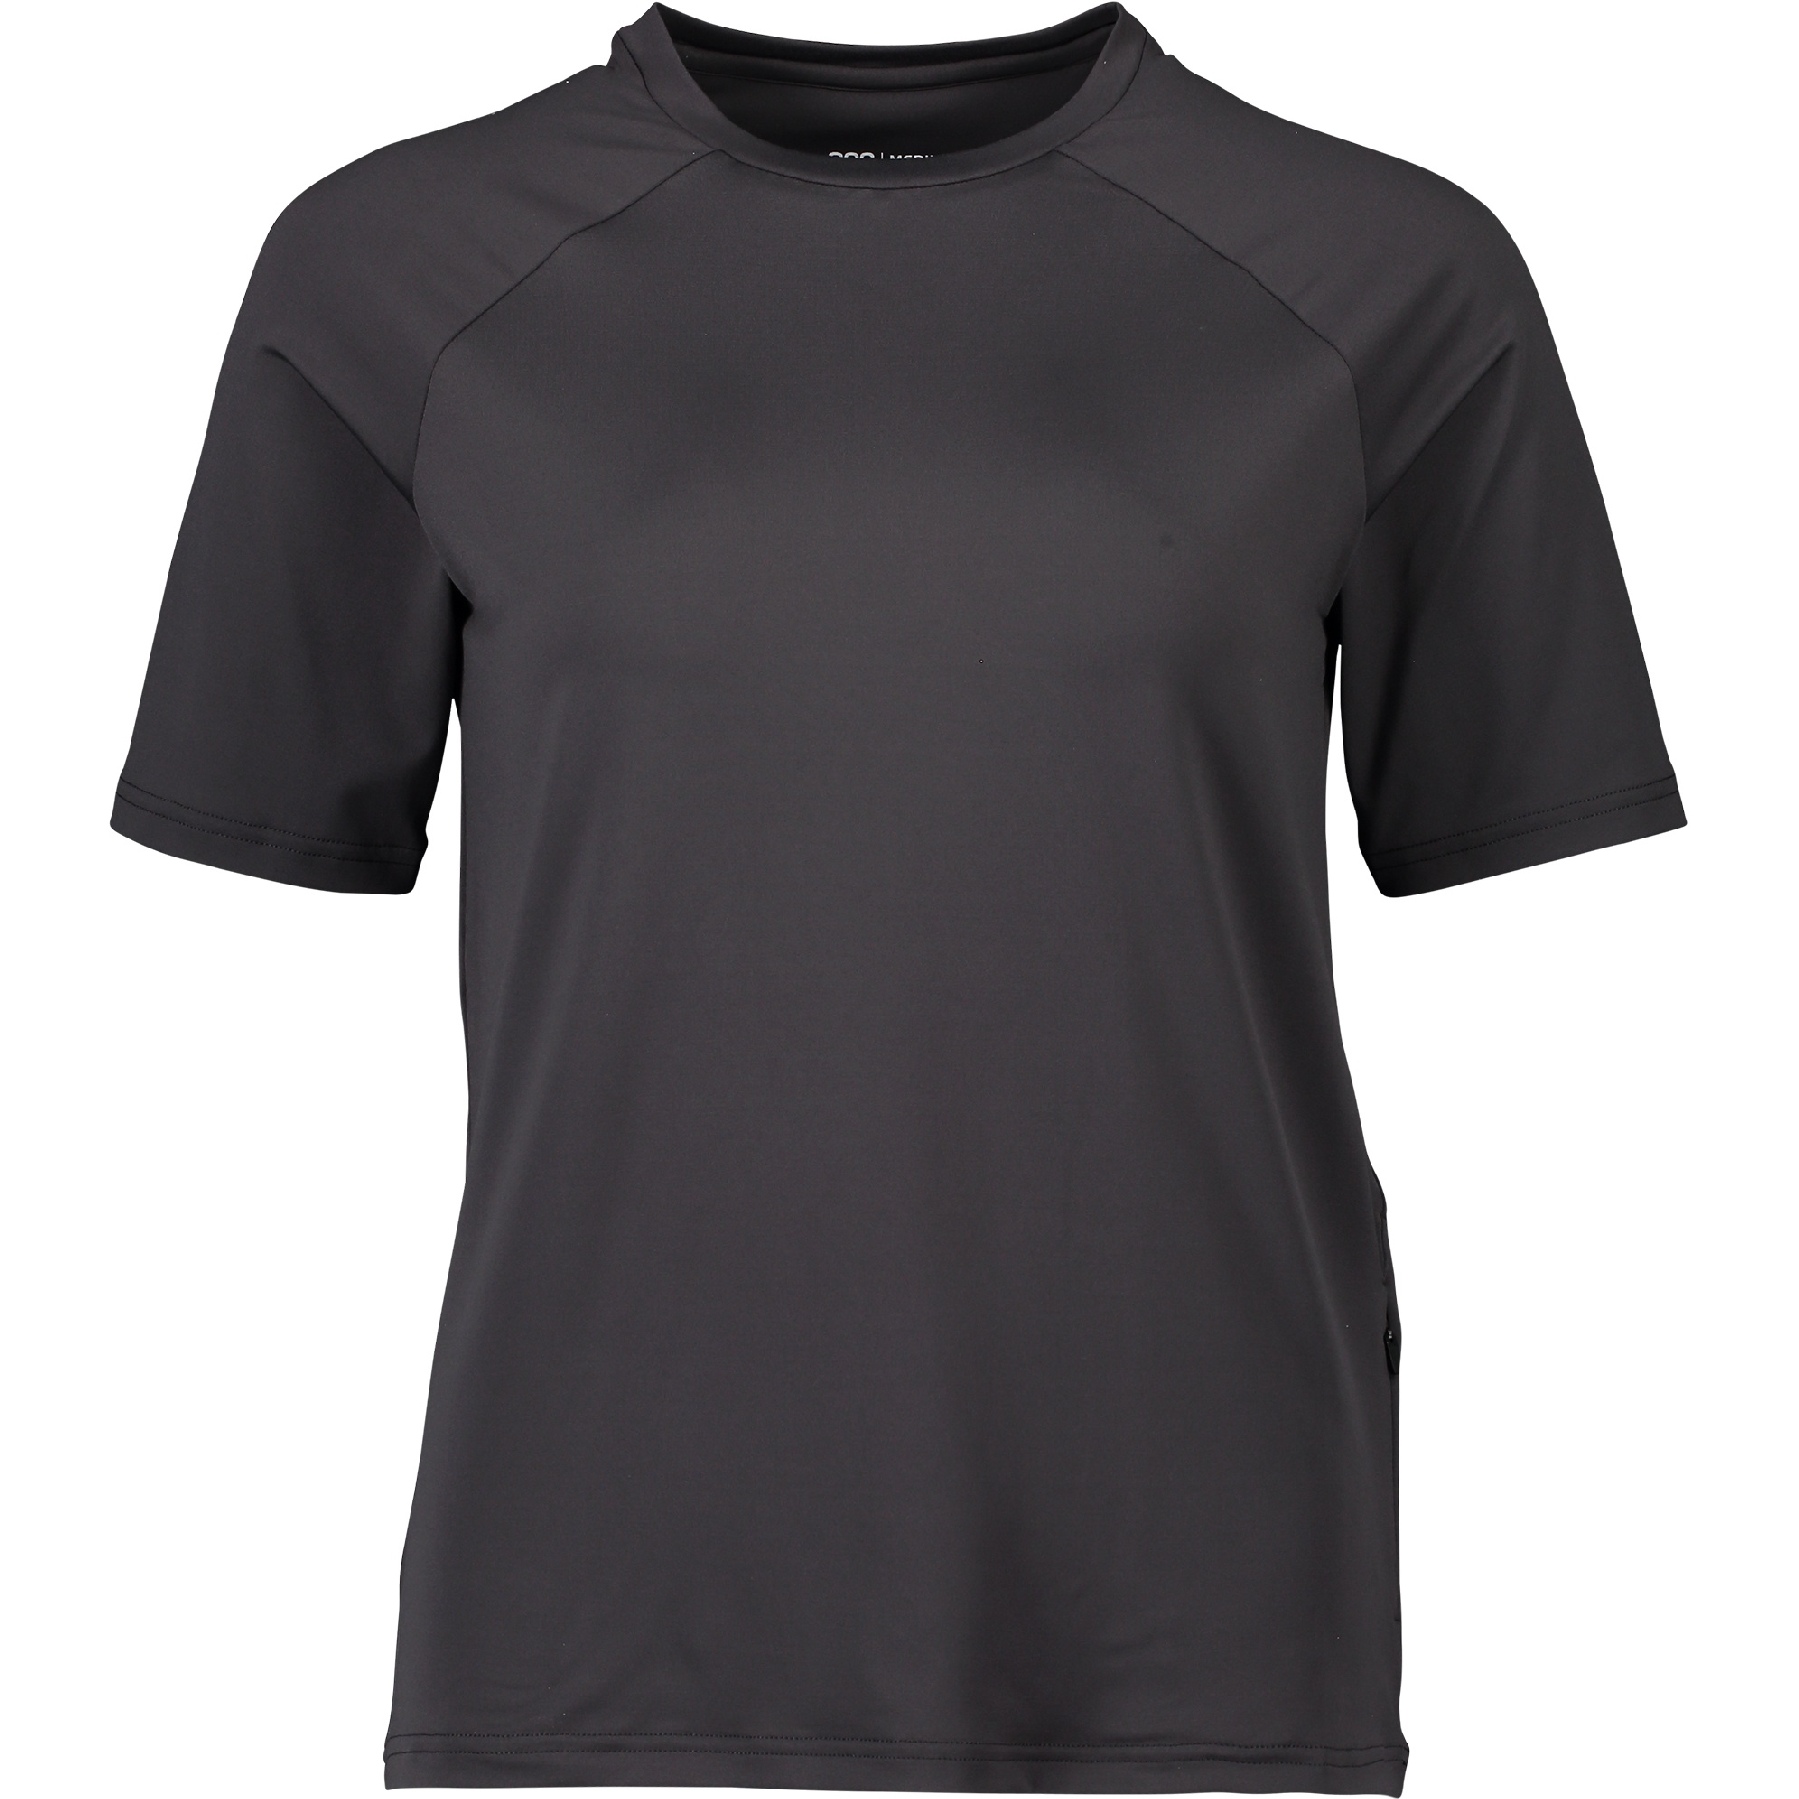 Produktbild von POC Reform Enduro Light T-Shirt Damen - 1043 Sylvanite Grey